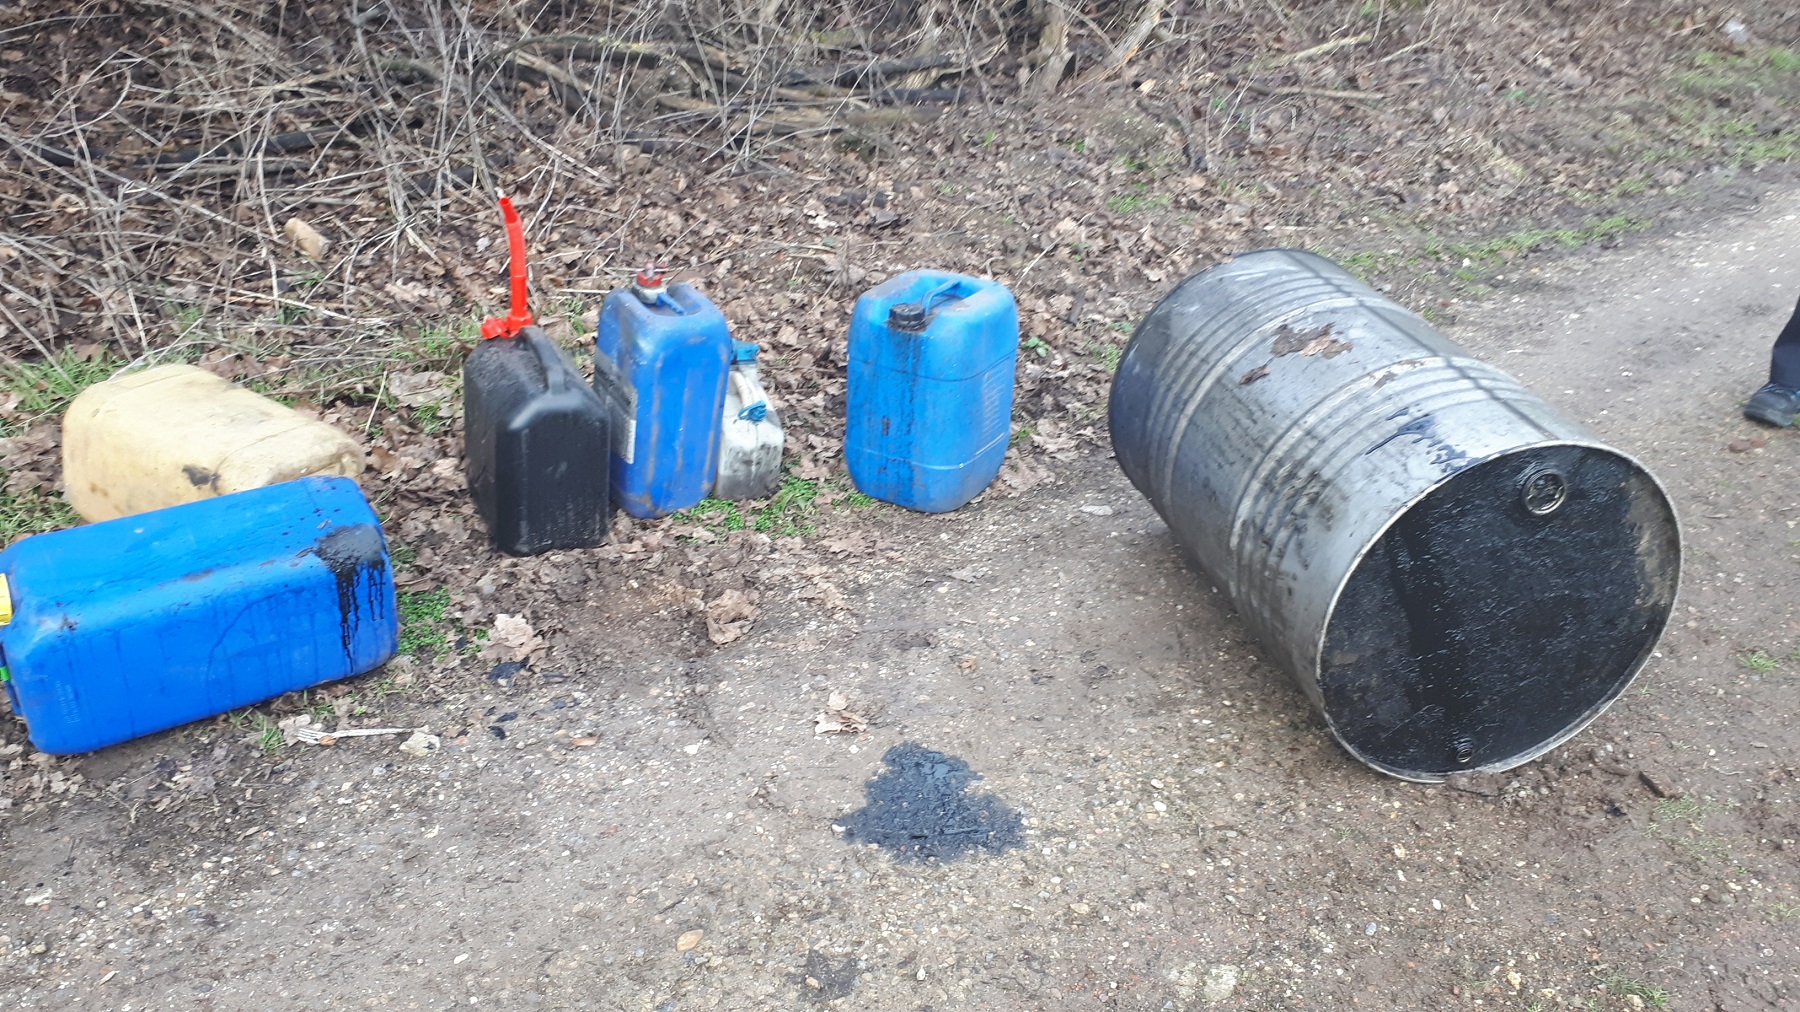 Kanister und Ölbehälter in der Landschaft